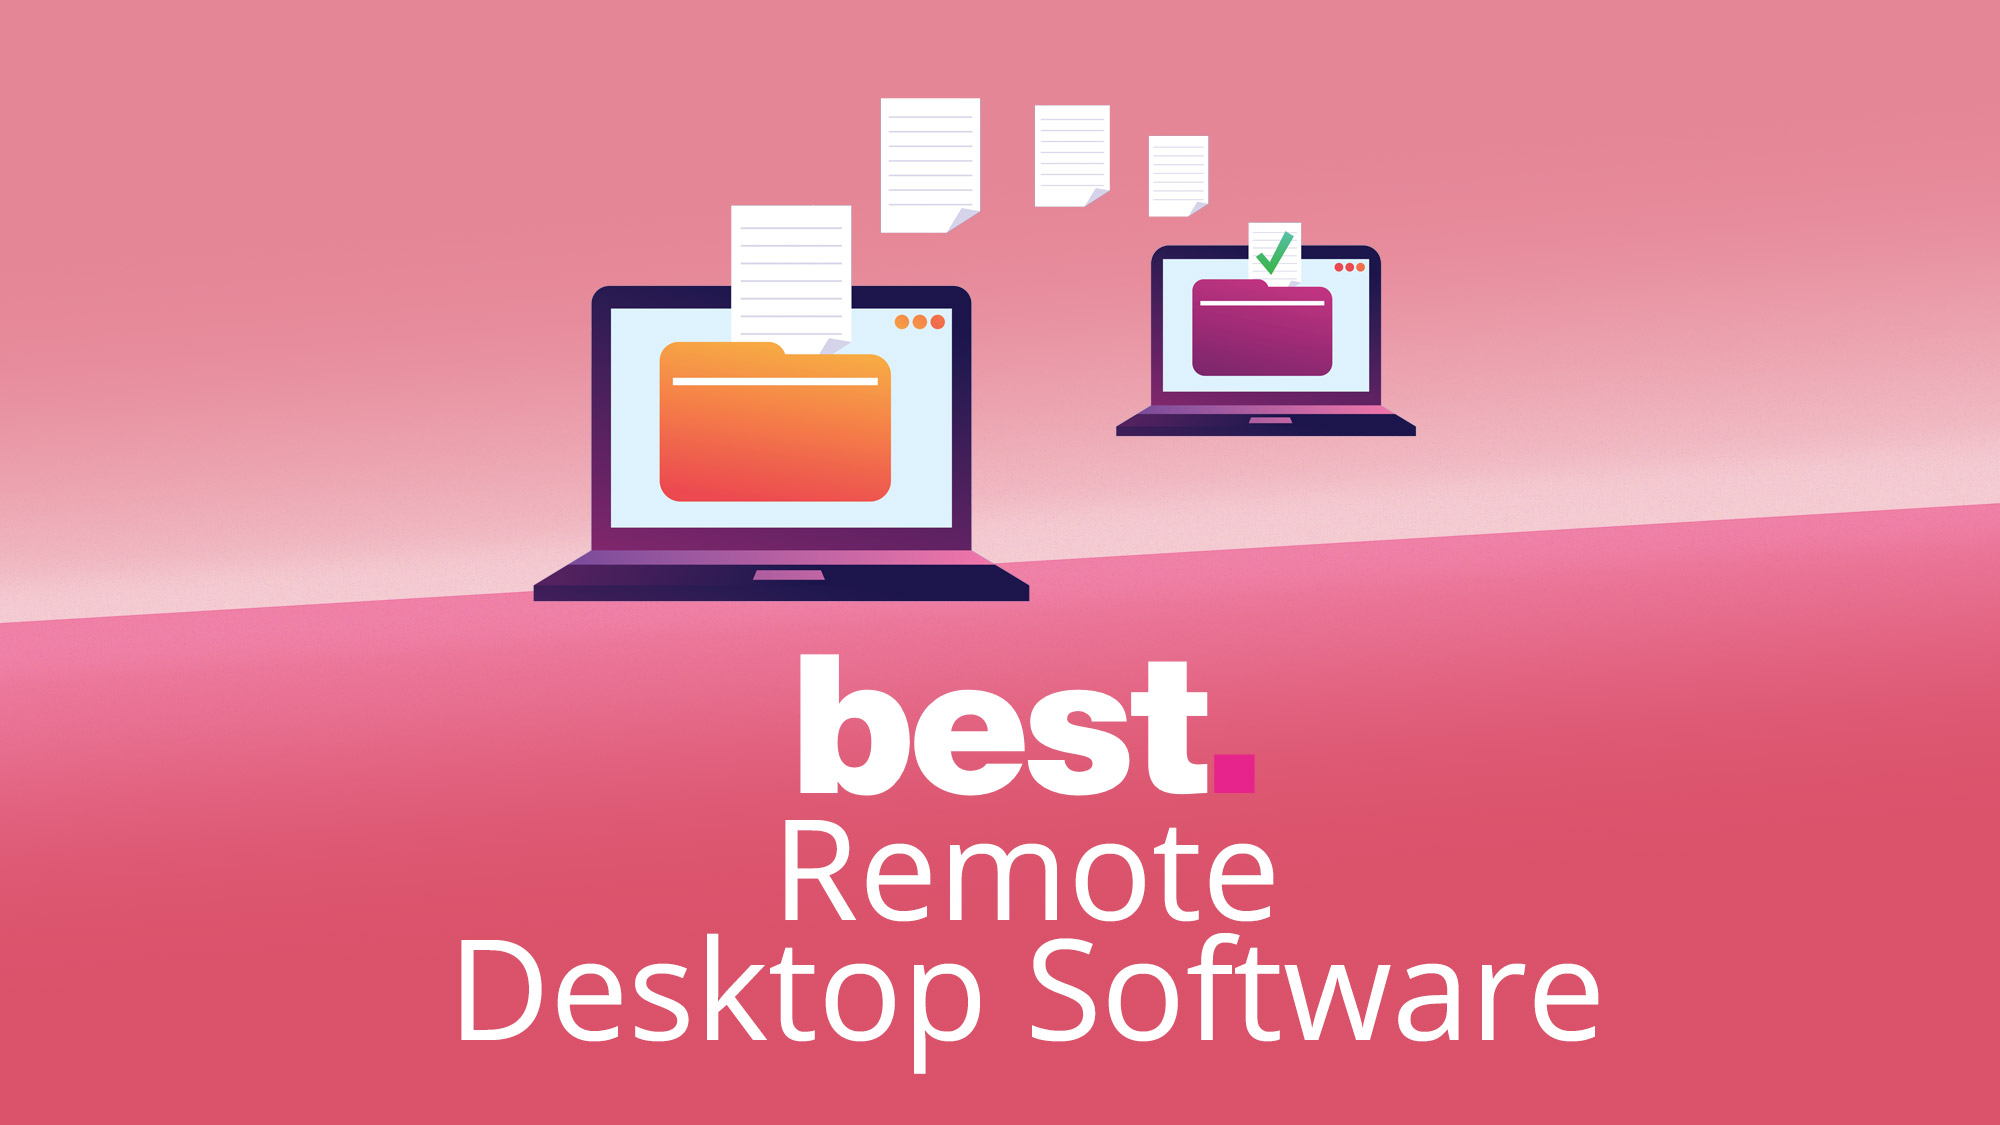 Mac desktop remote control apps